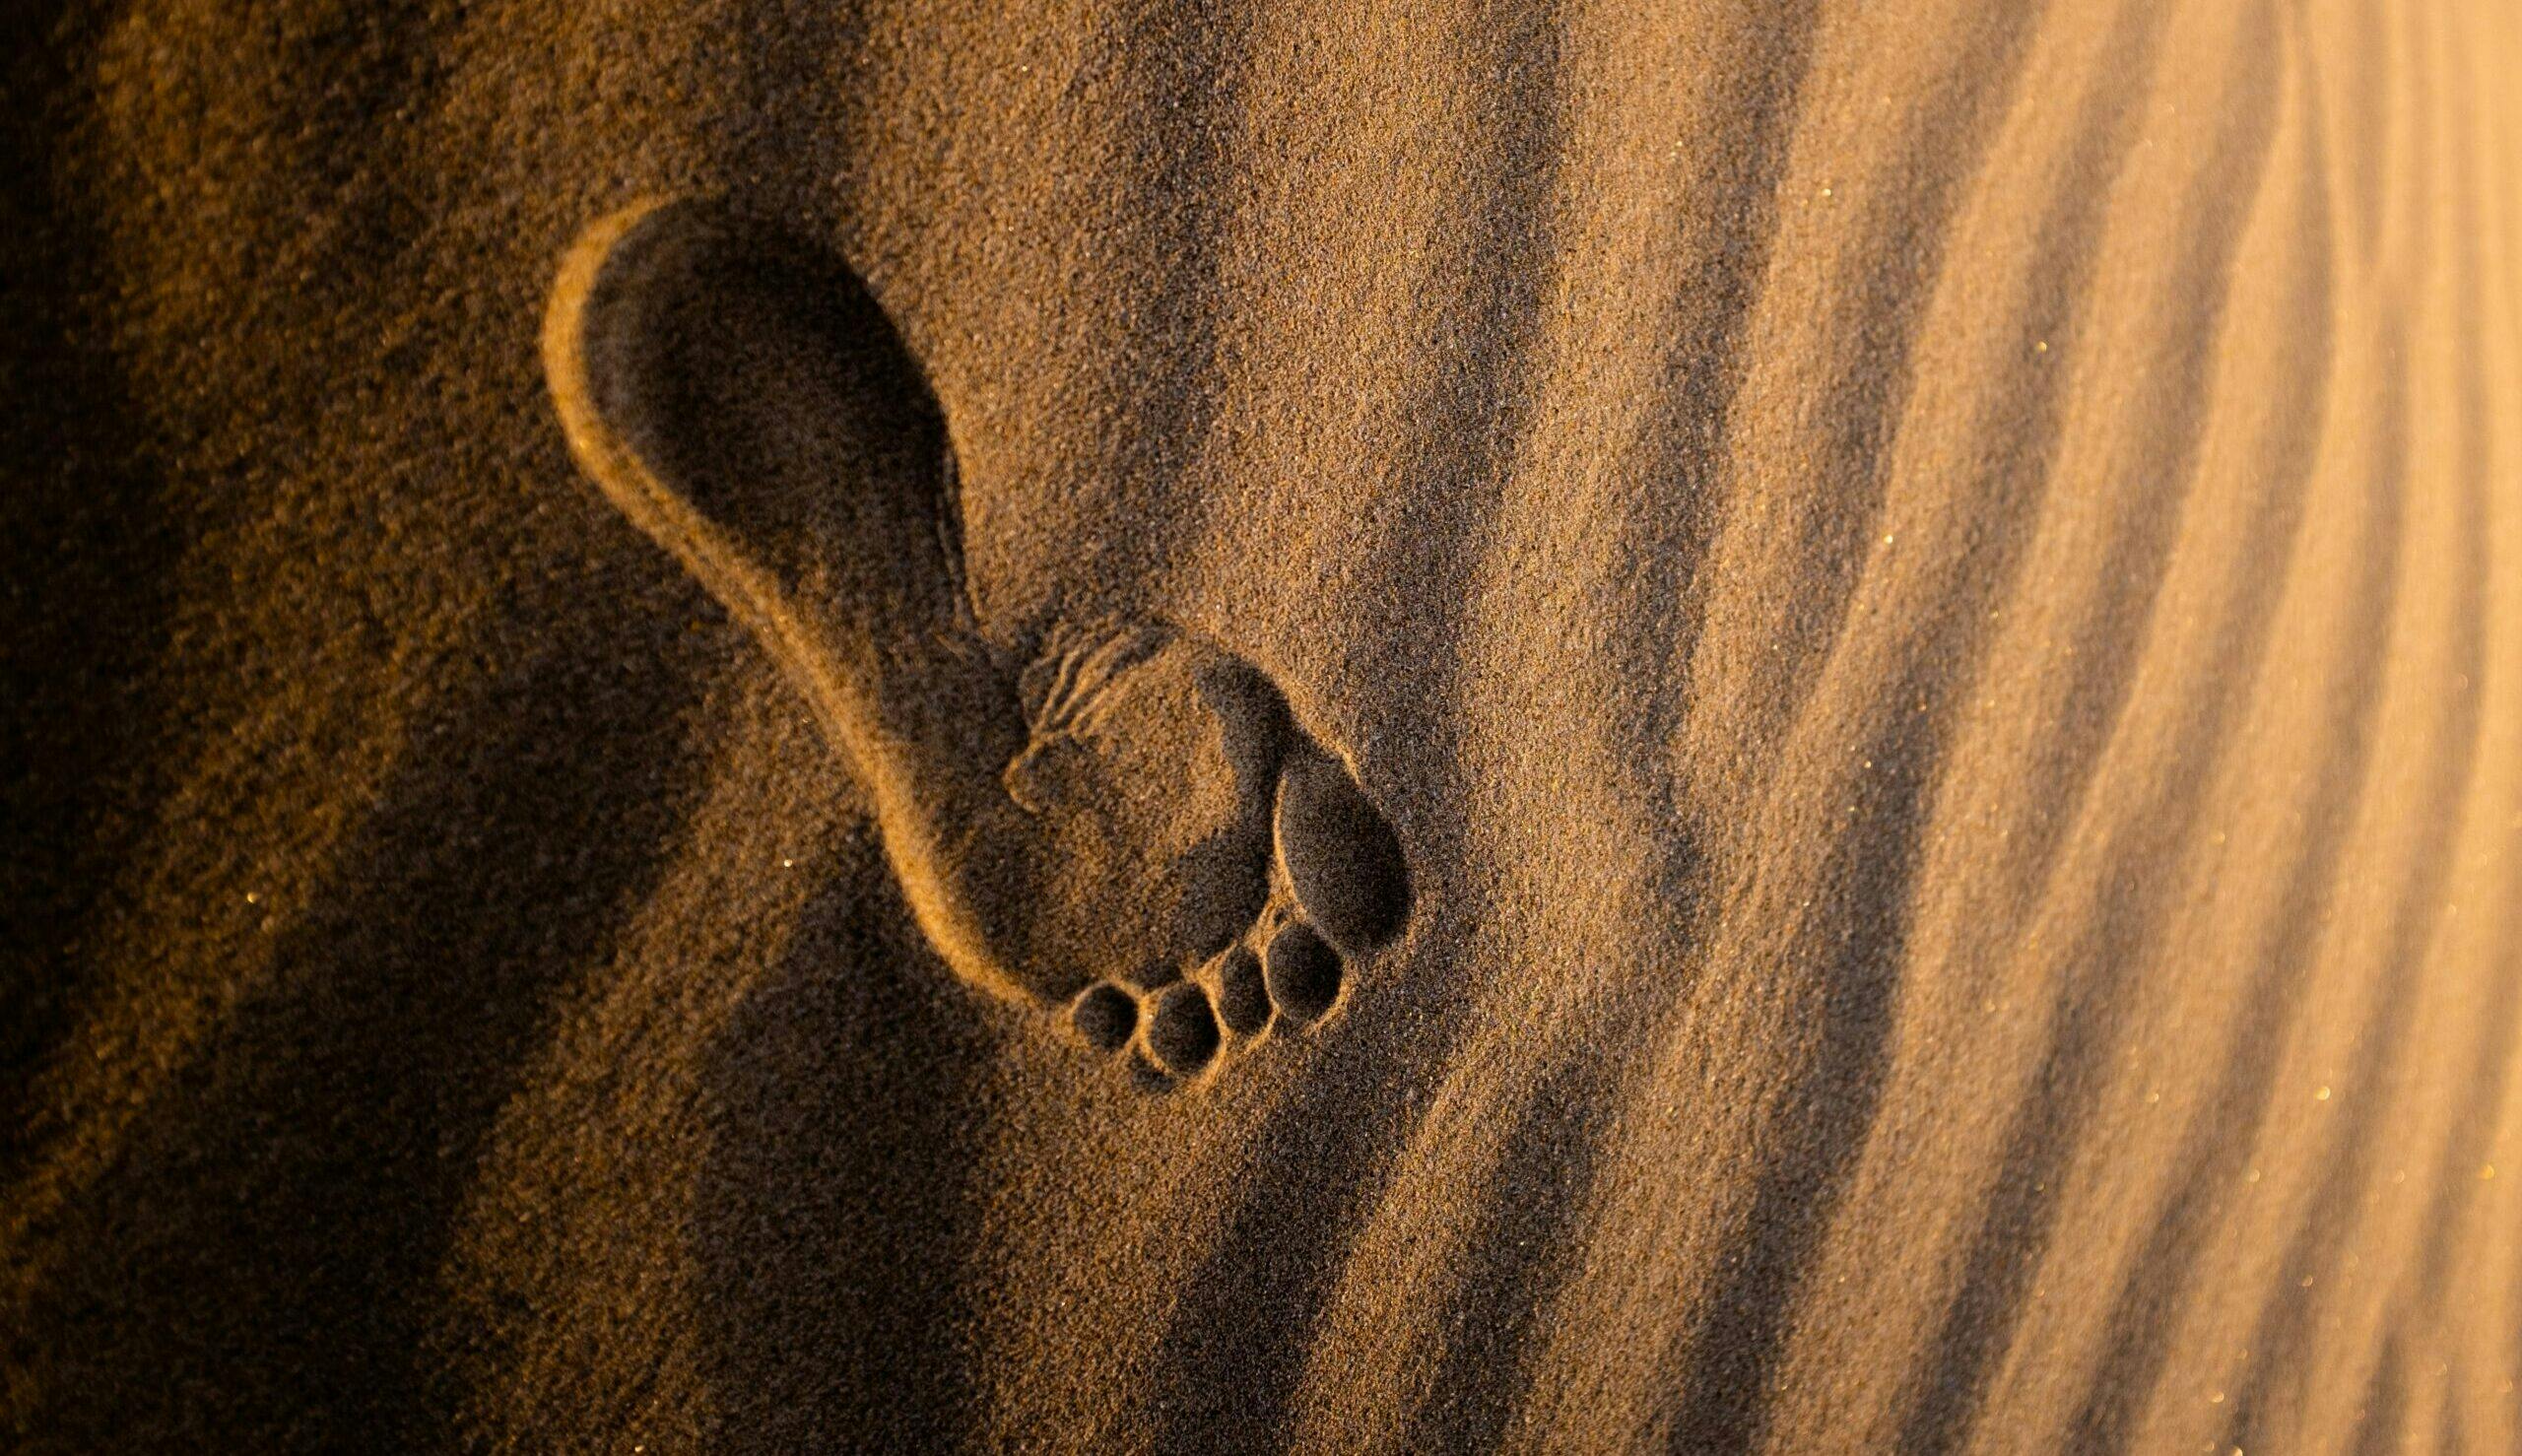 Bare footprint in the desert sand